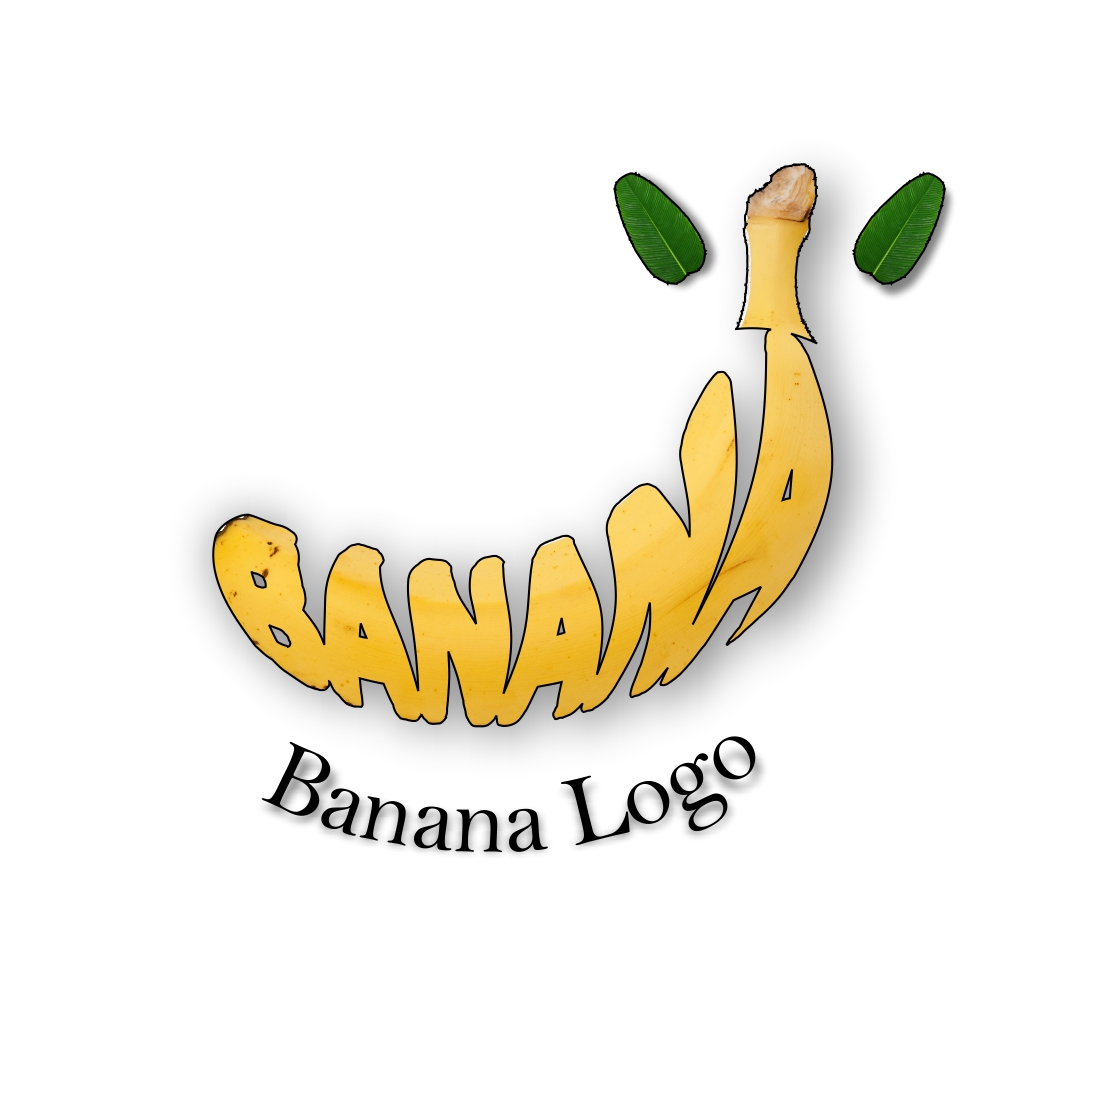 bana logo